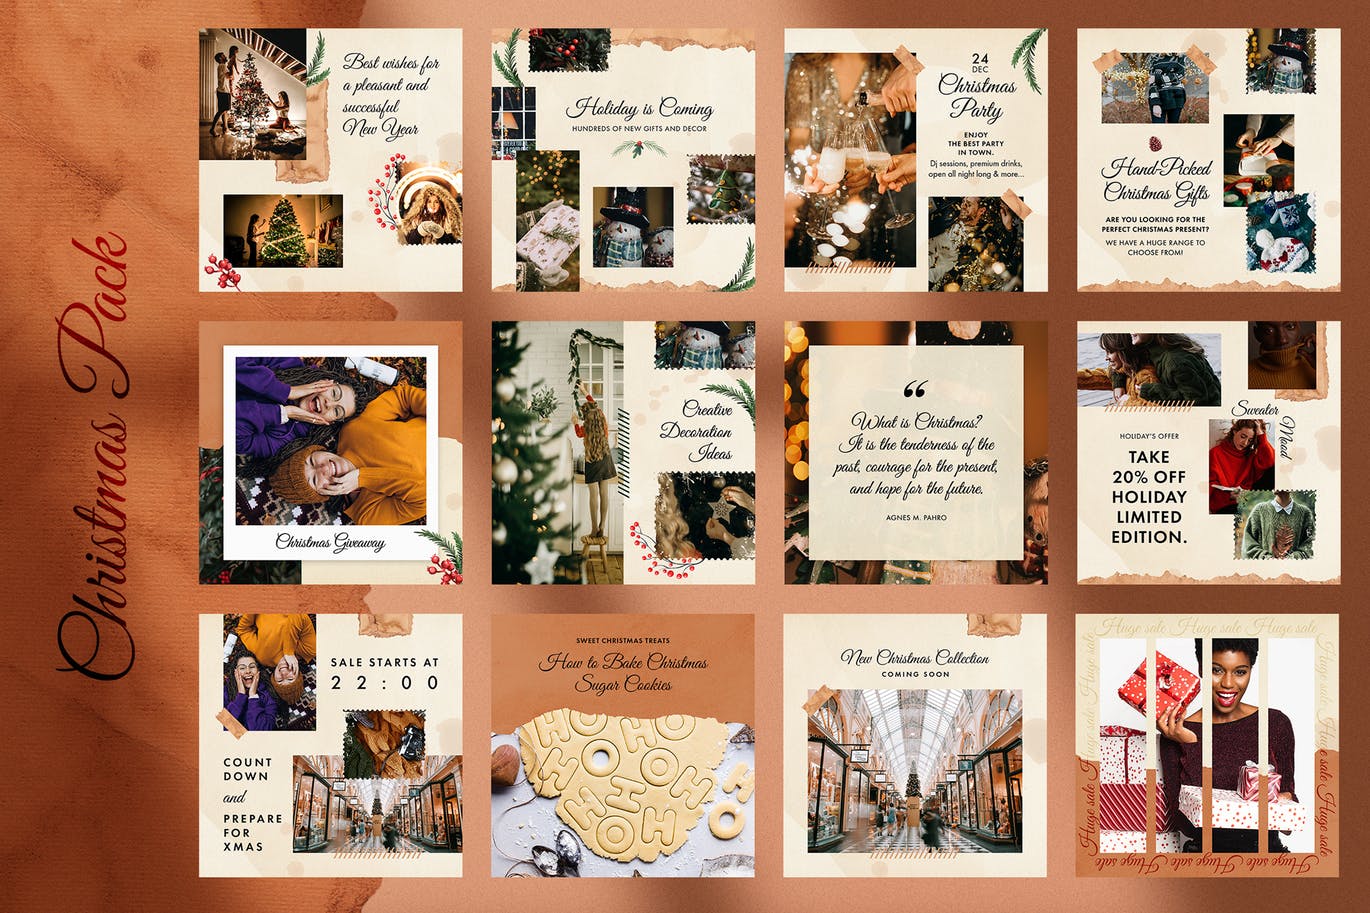 圣诞节主题风格Instagram社交推广素材包 Christmas Instagram Pack插图(3)